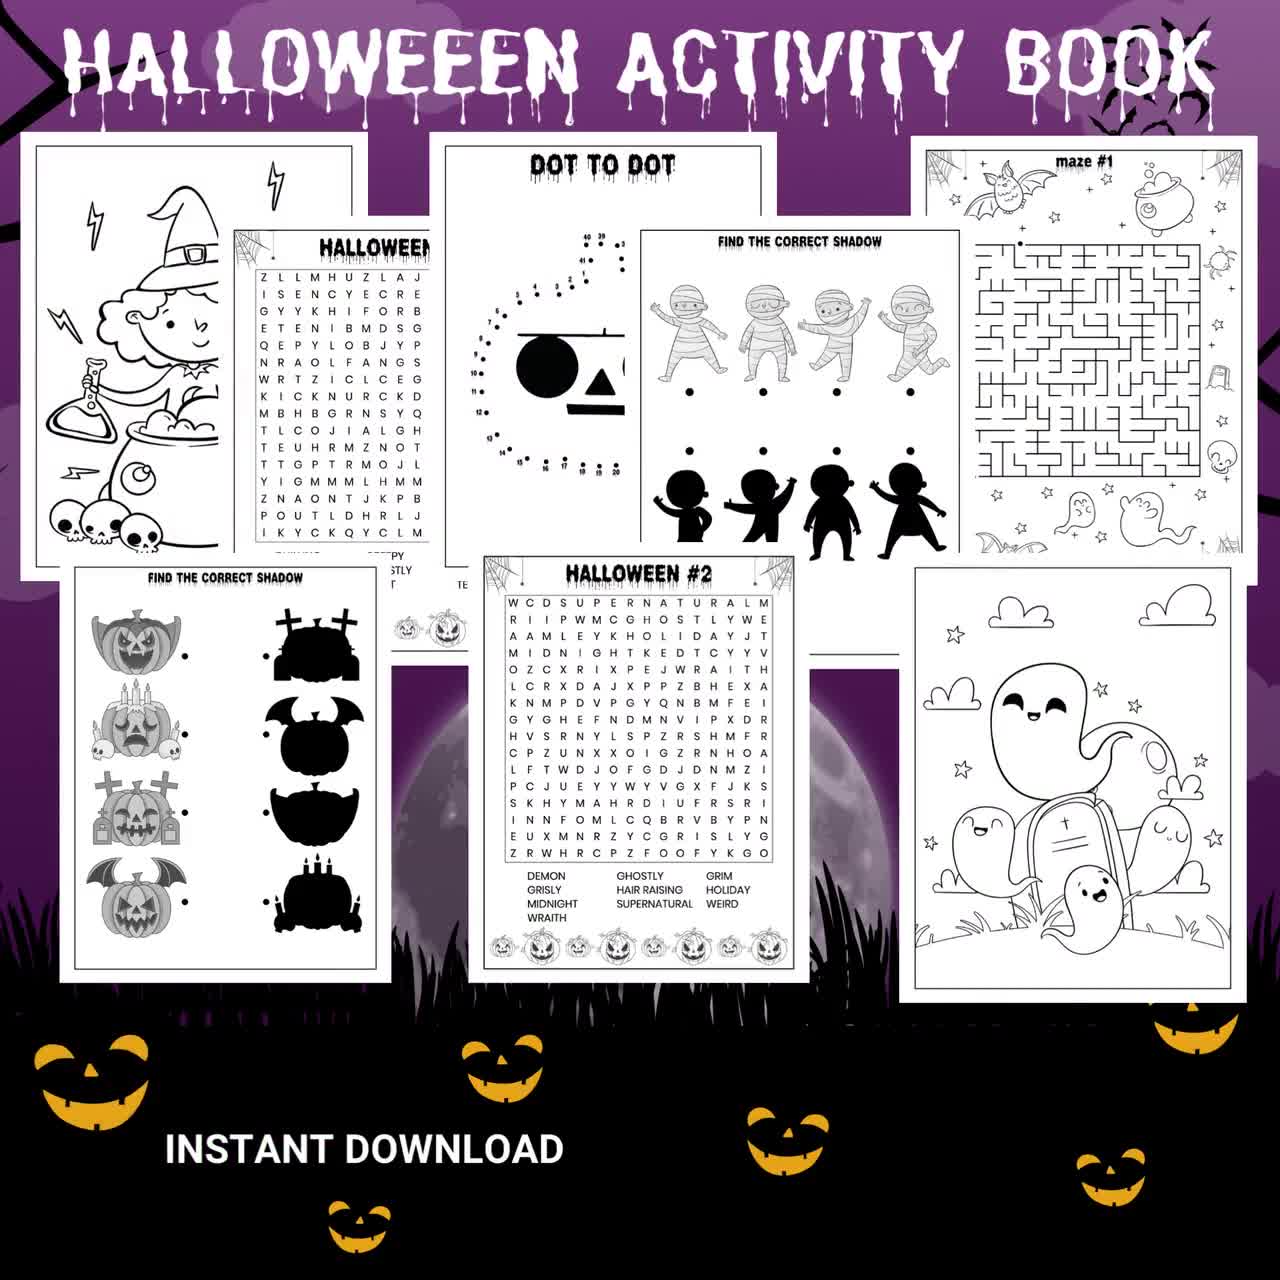 https://v.etsystatic.com/video/upload/q_auto/Halloween_Activity_Book_Mockups_gprepr.jpg